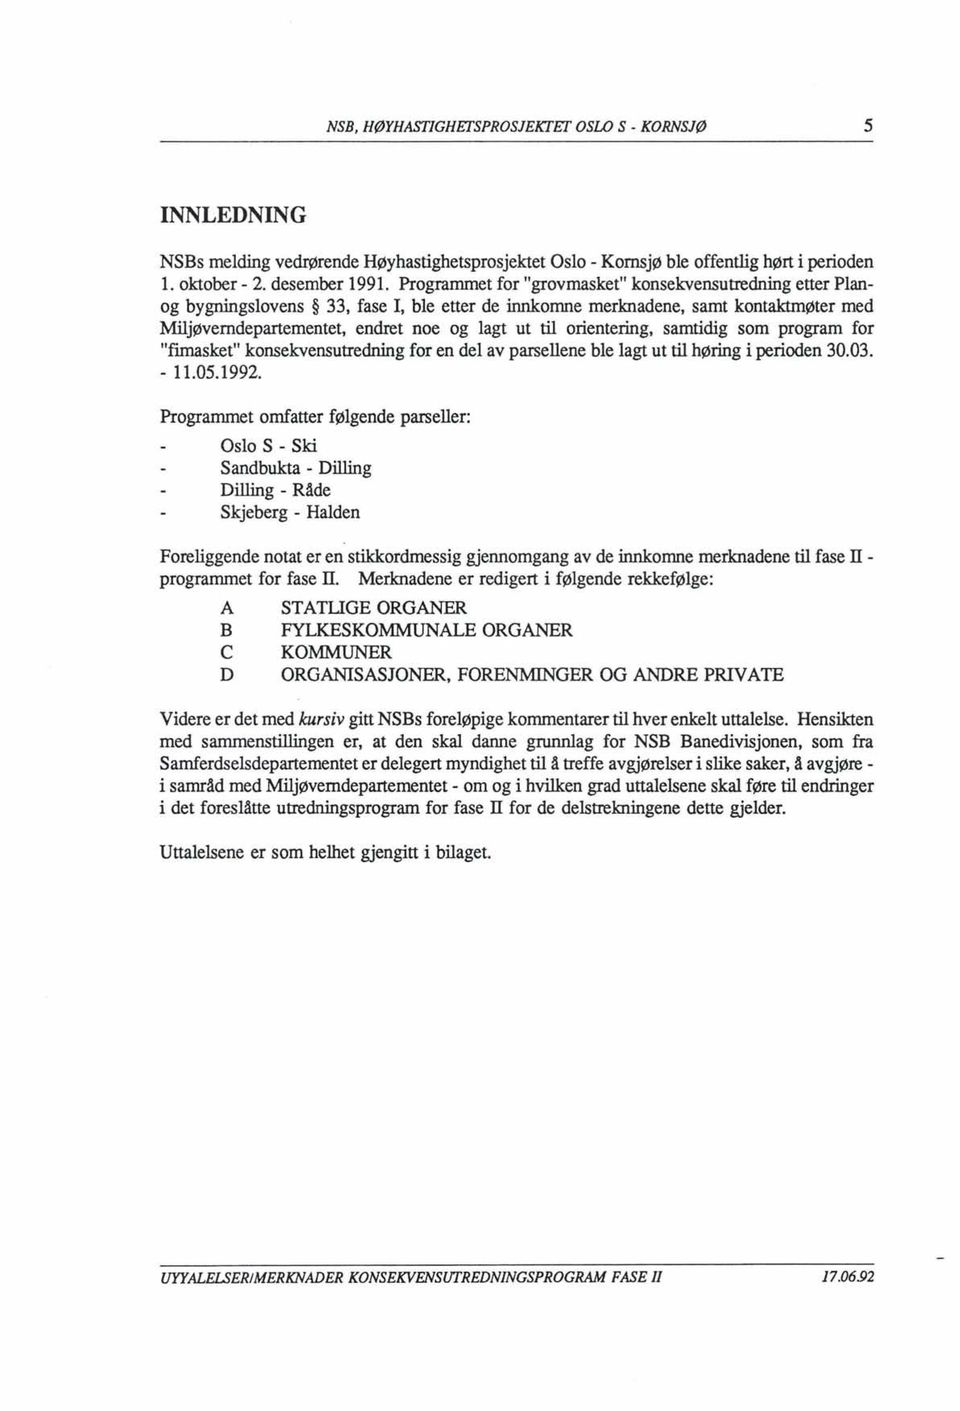 orientering, samtidig som program for "fimasket" konsekvensutredning for en del av parsellene ble lagt ut til høring i perioden 30.03. - 11.05.1992.